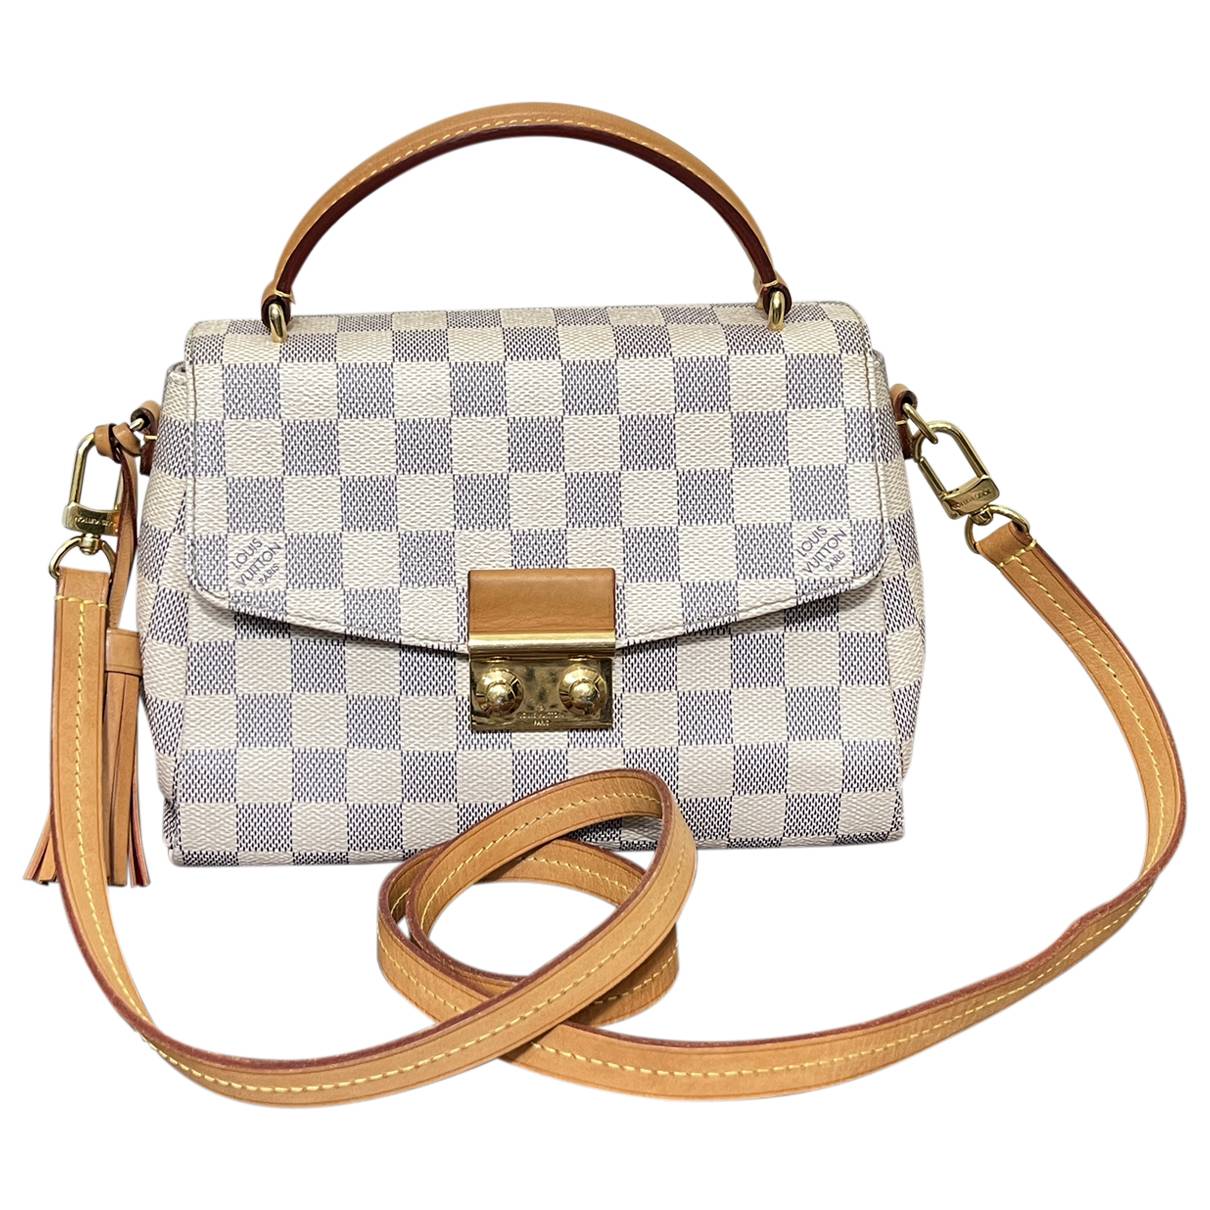 Croisette Louis Vuitton Handbags for Women - Vestiaire Collective